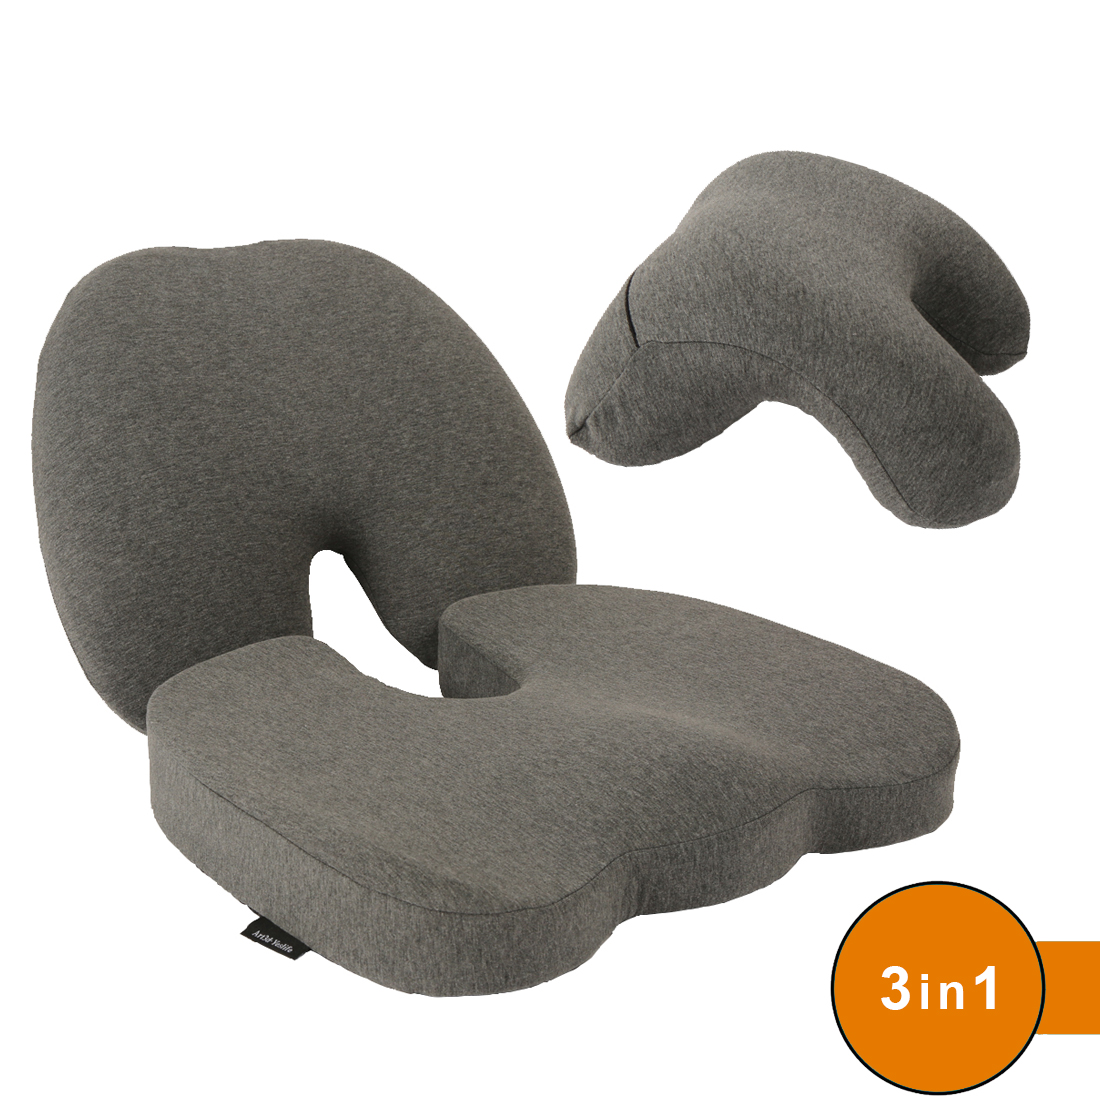 Comfy Curve Back Support Pillow Ergonomic Memory Foam Orthopedic Drive  Sleep Sit